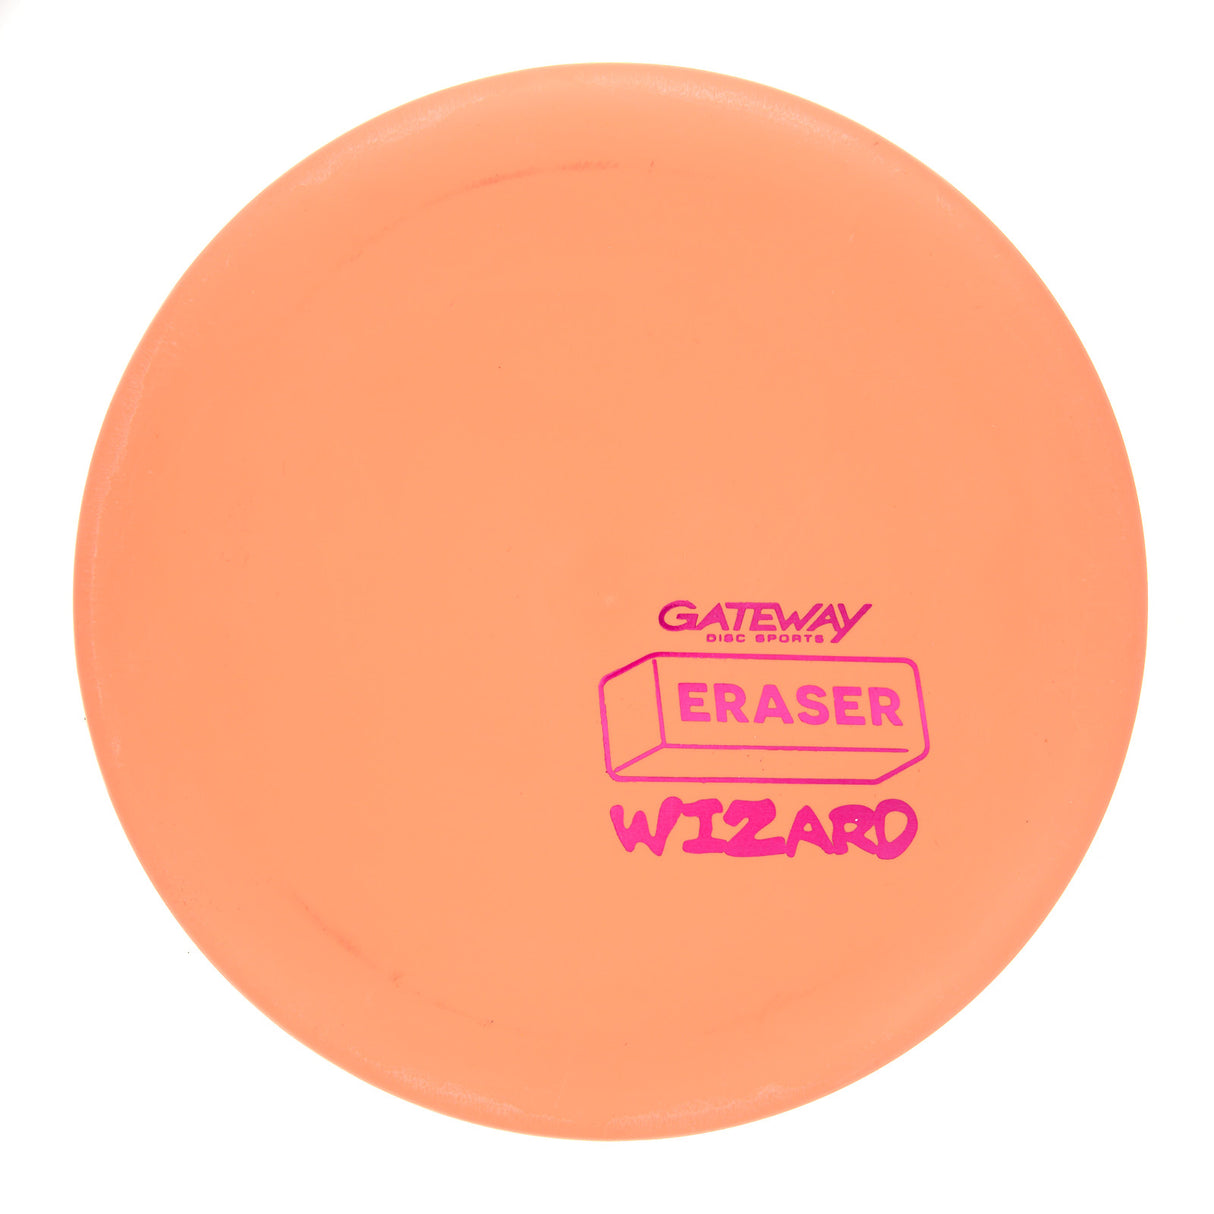 Gateway Wizard - Eraser 173g | Style 0001